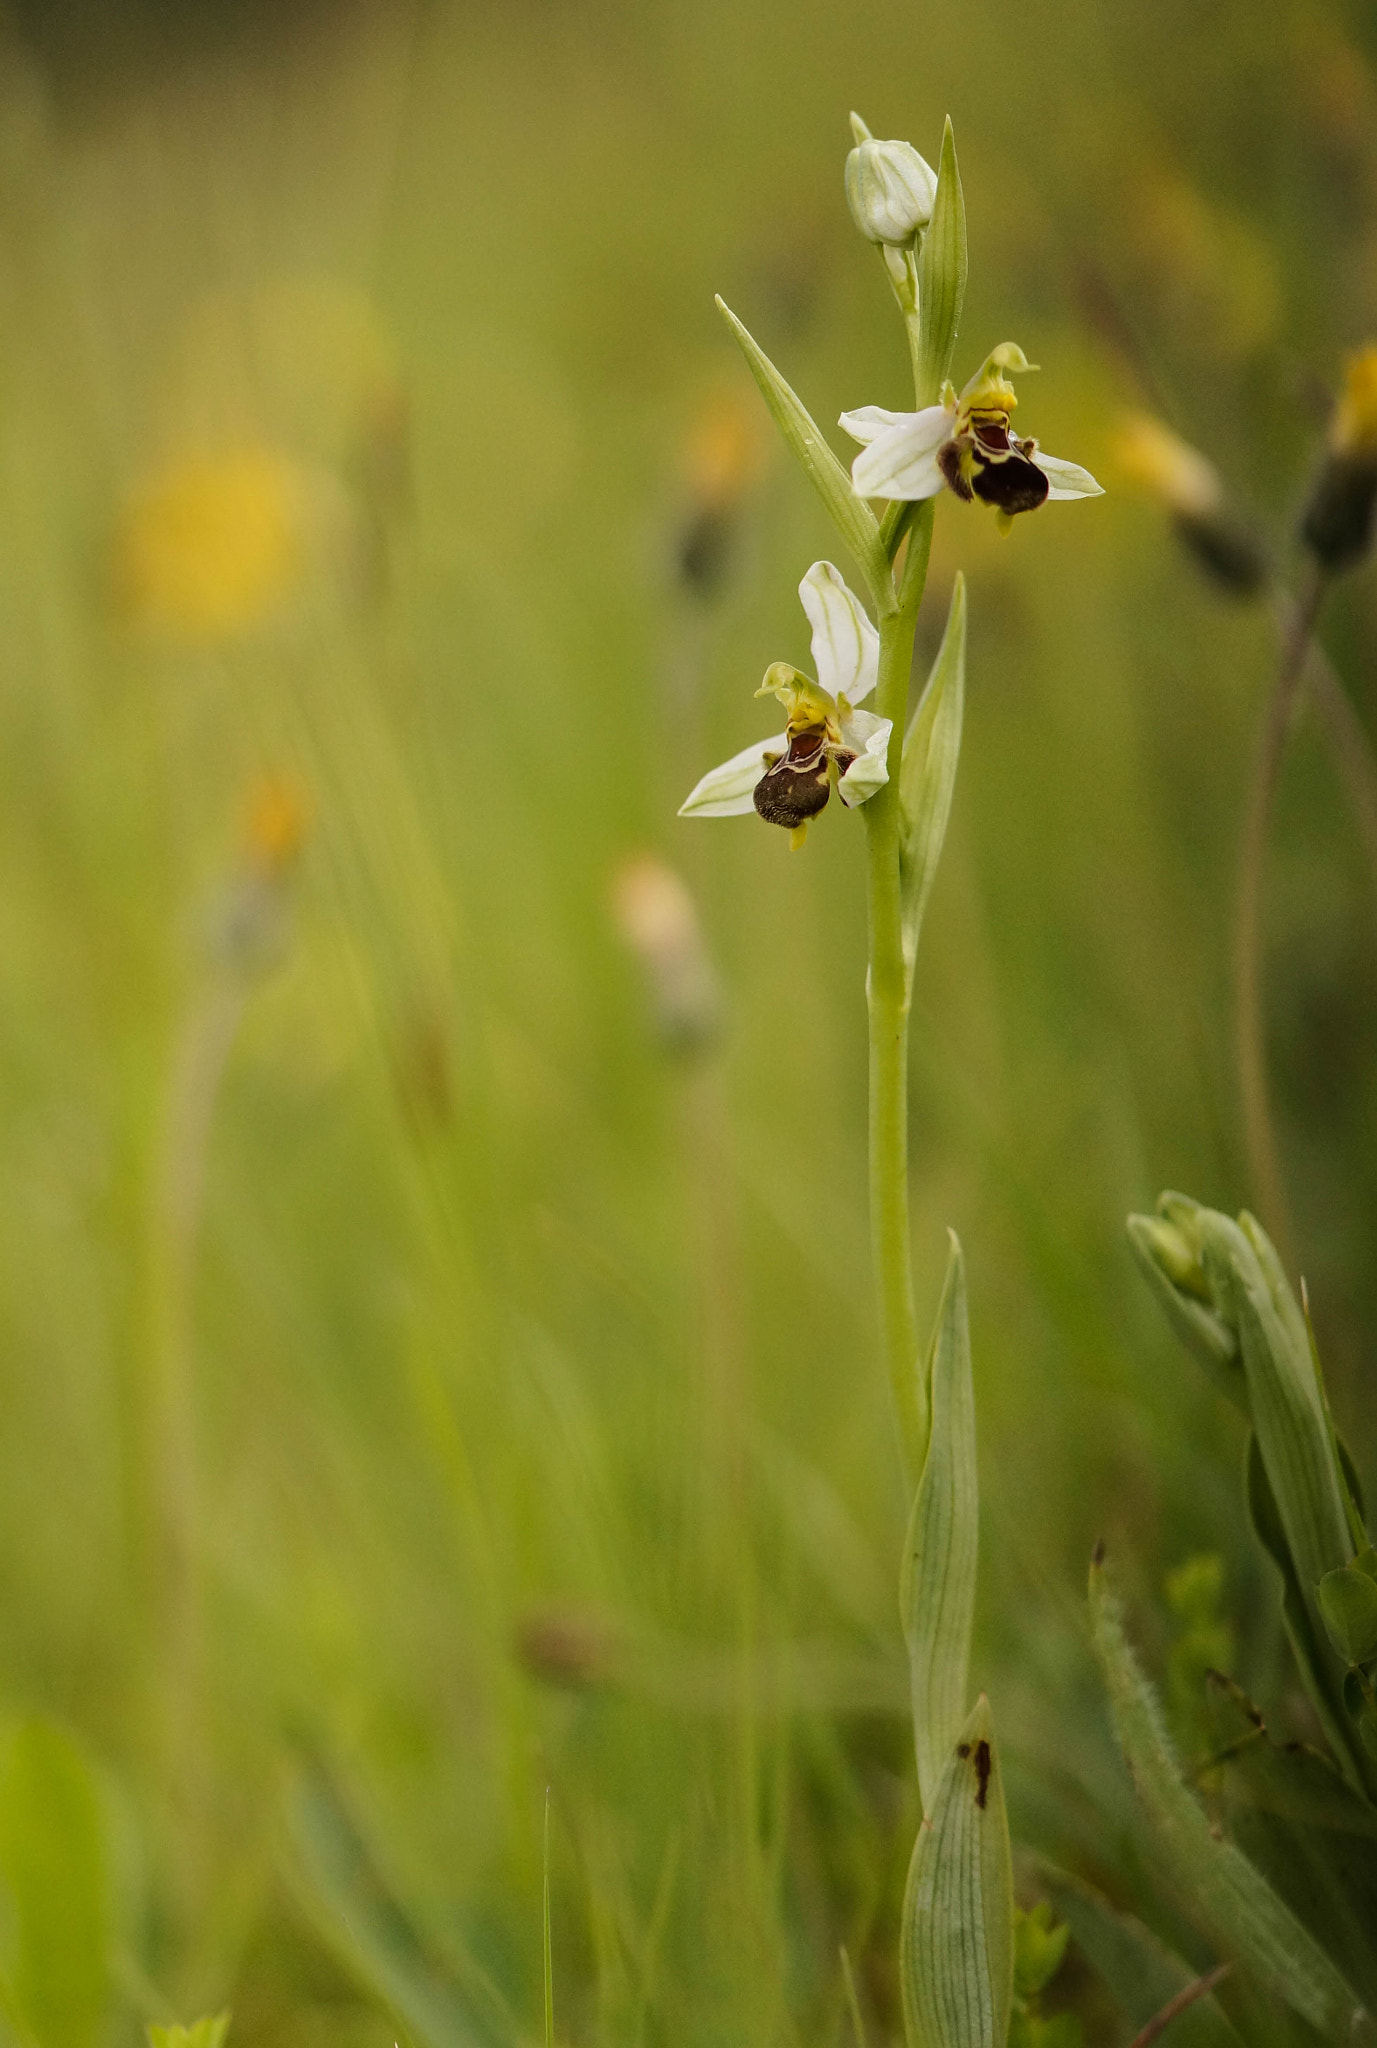 Sony SLT-A57 sample photo. Ophrys apifera hypochrome photography